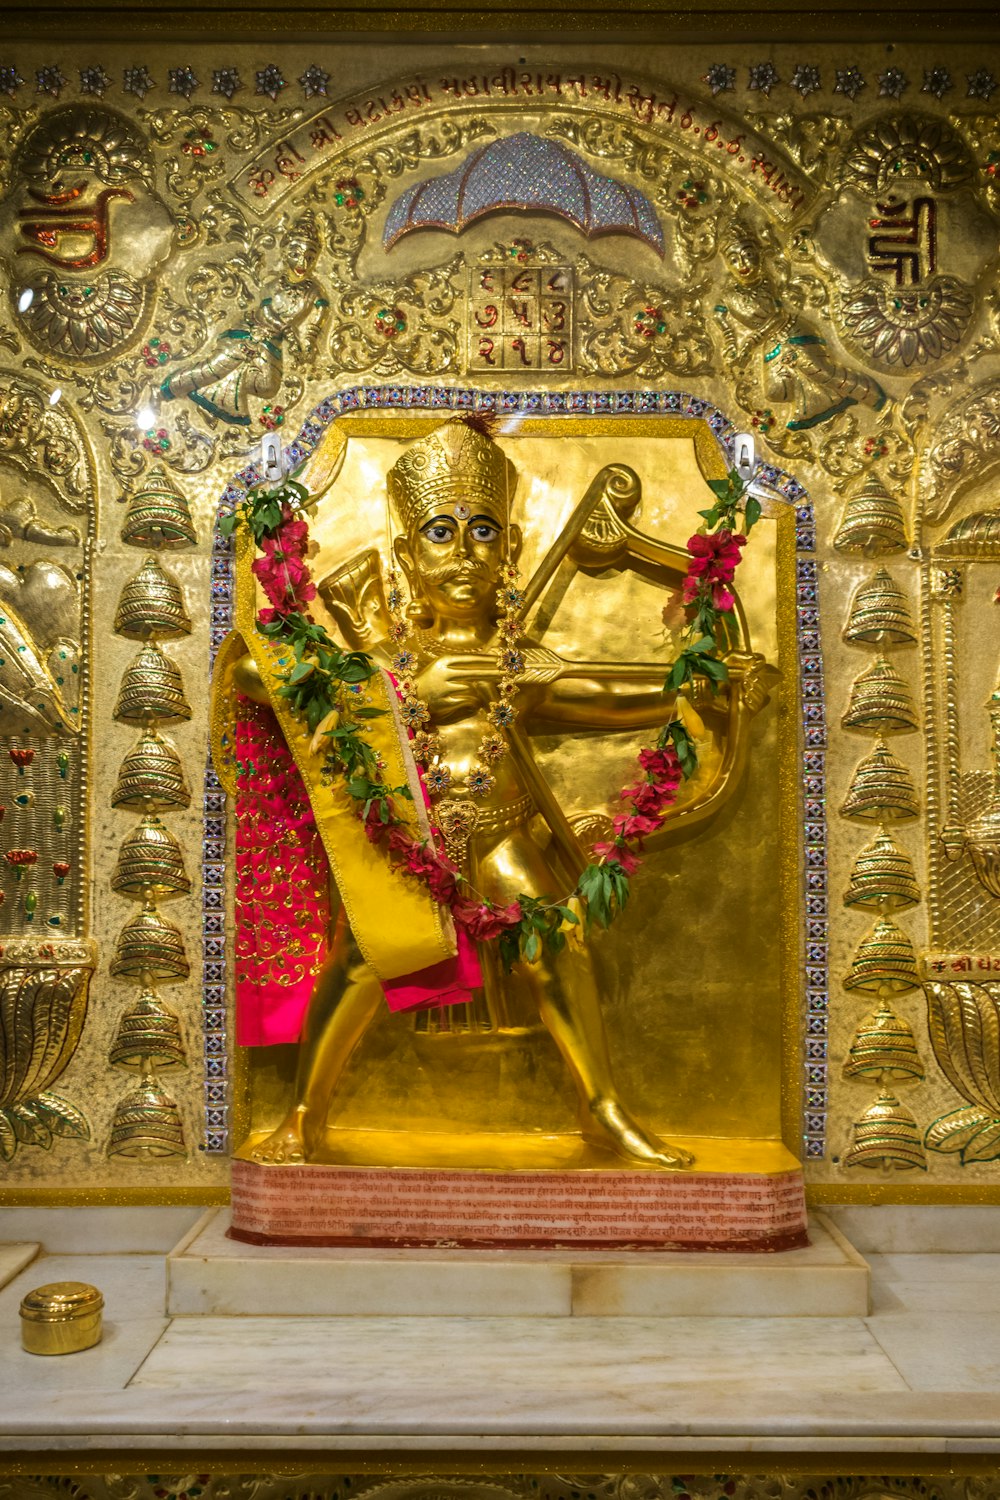 a golden statue of a man holding a sword